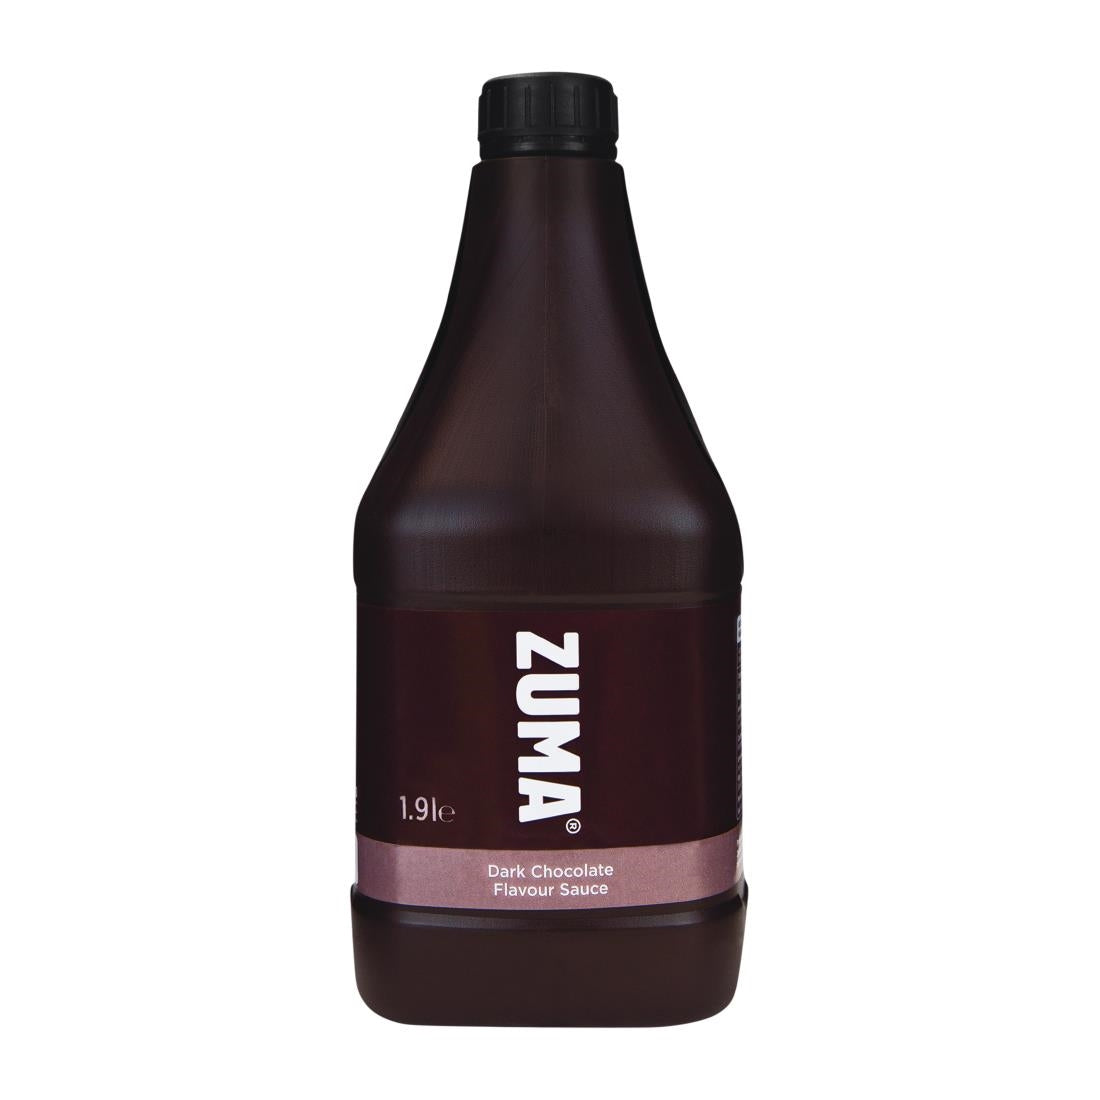 DX620 Zuma Dark Chocolate Sauce 1.9Ltr